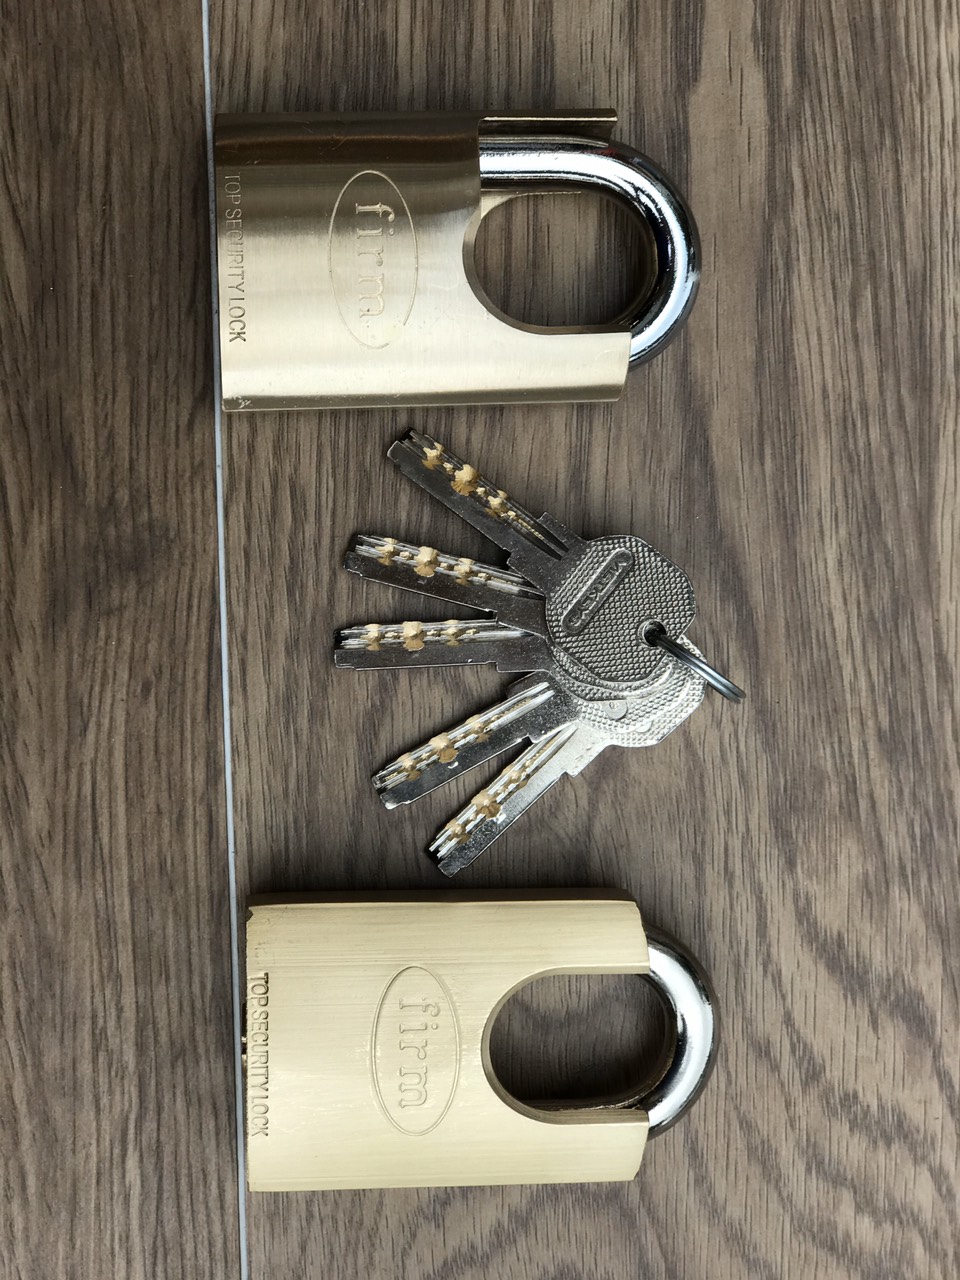 Bộ 2 ổ khóa đồng chống cắt dùng chung 1 chìa chất lượng cao